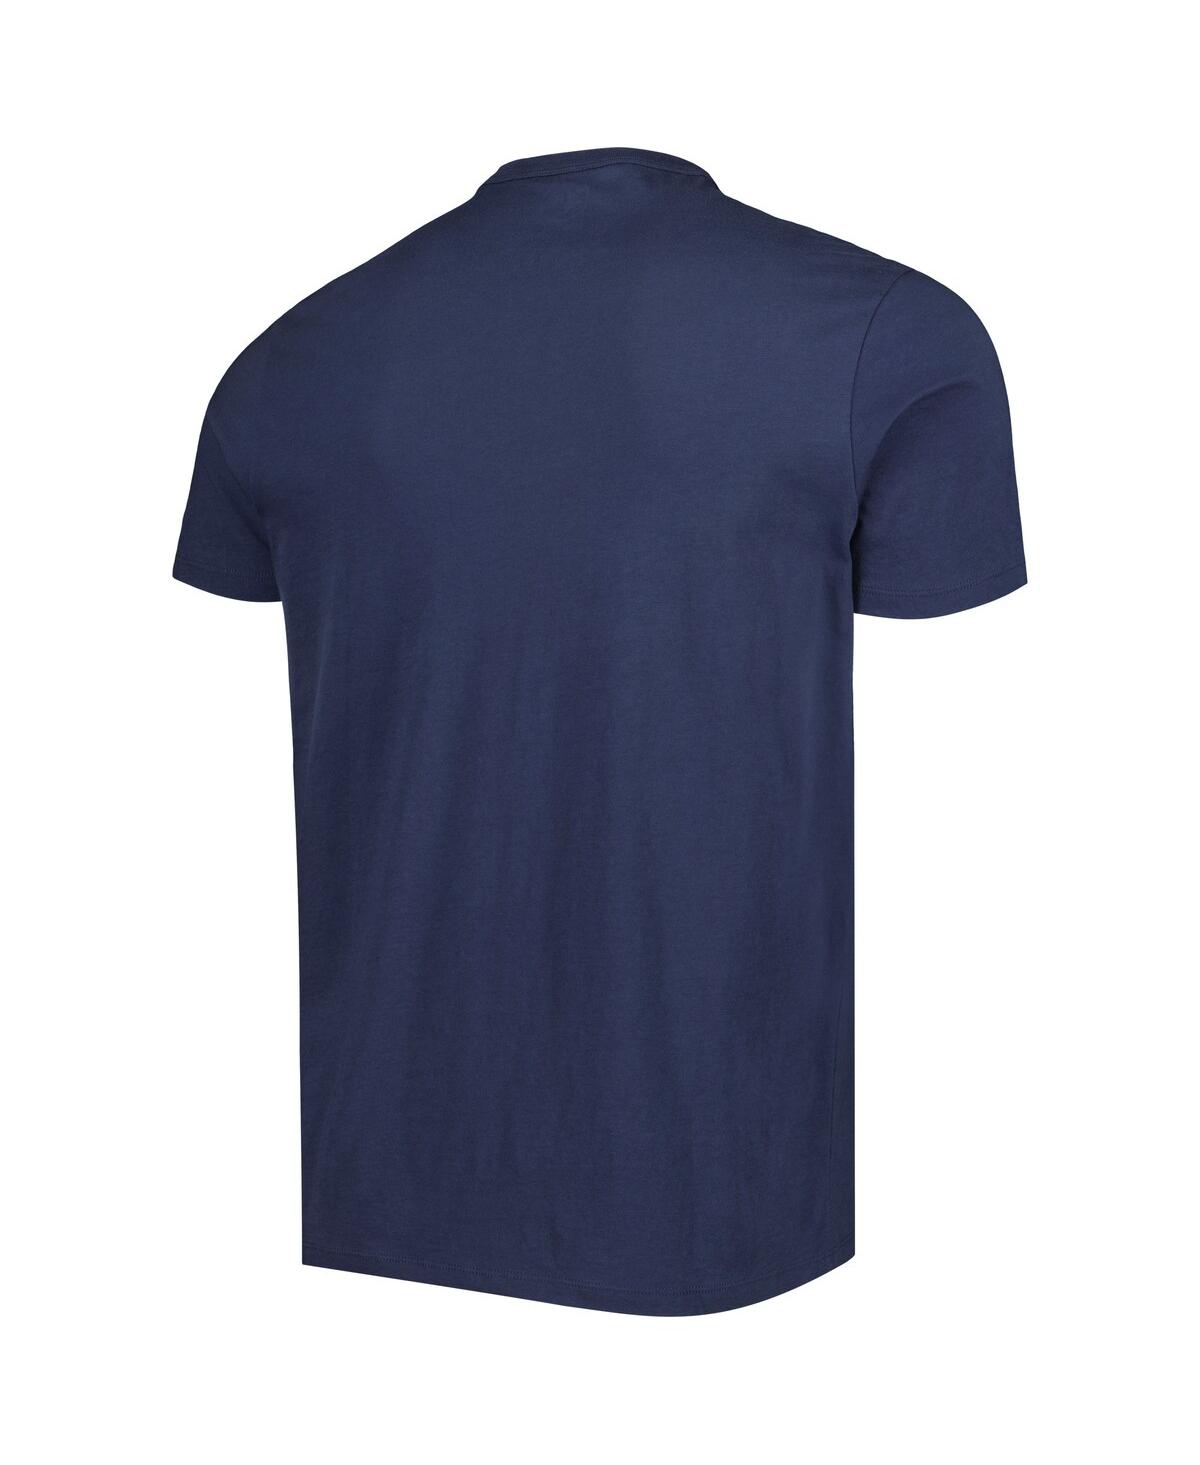 Shop 47 Brand Men's ' Navy Chicago Bears Logo Team Stripe T-shirt